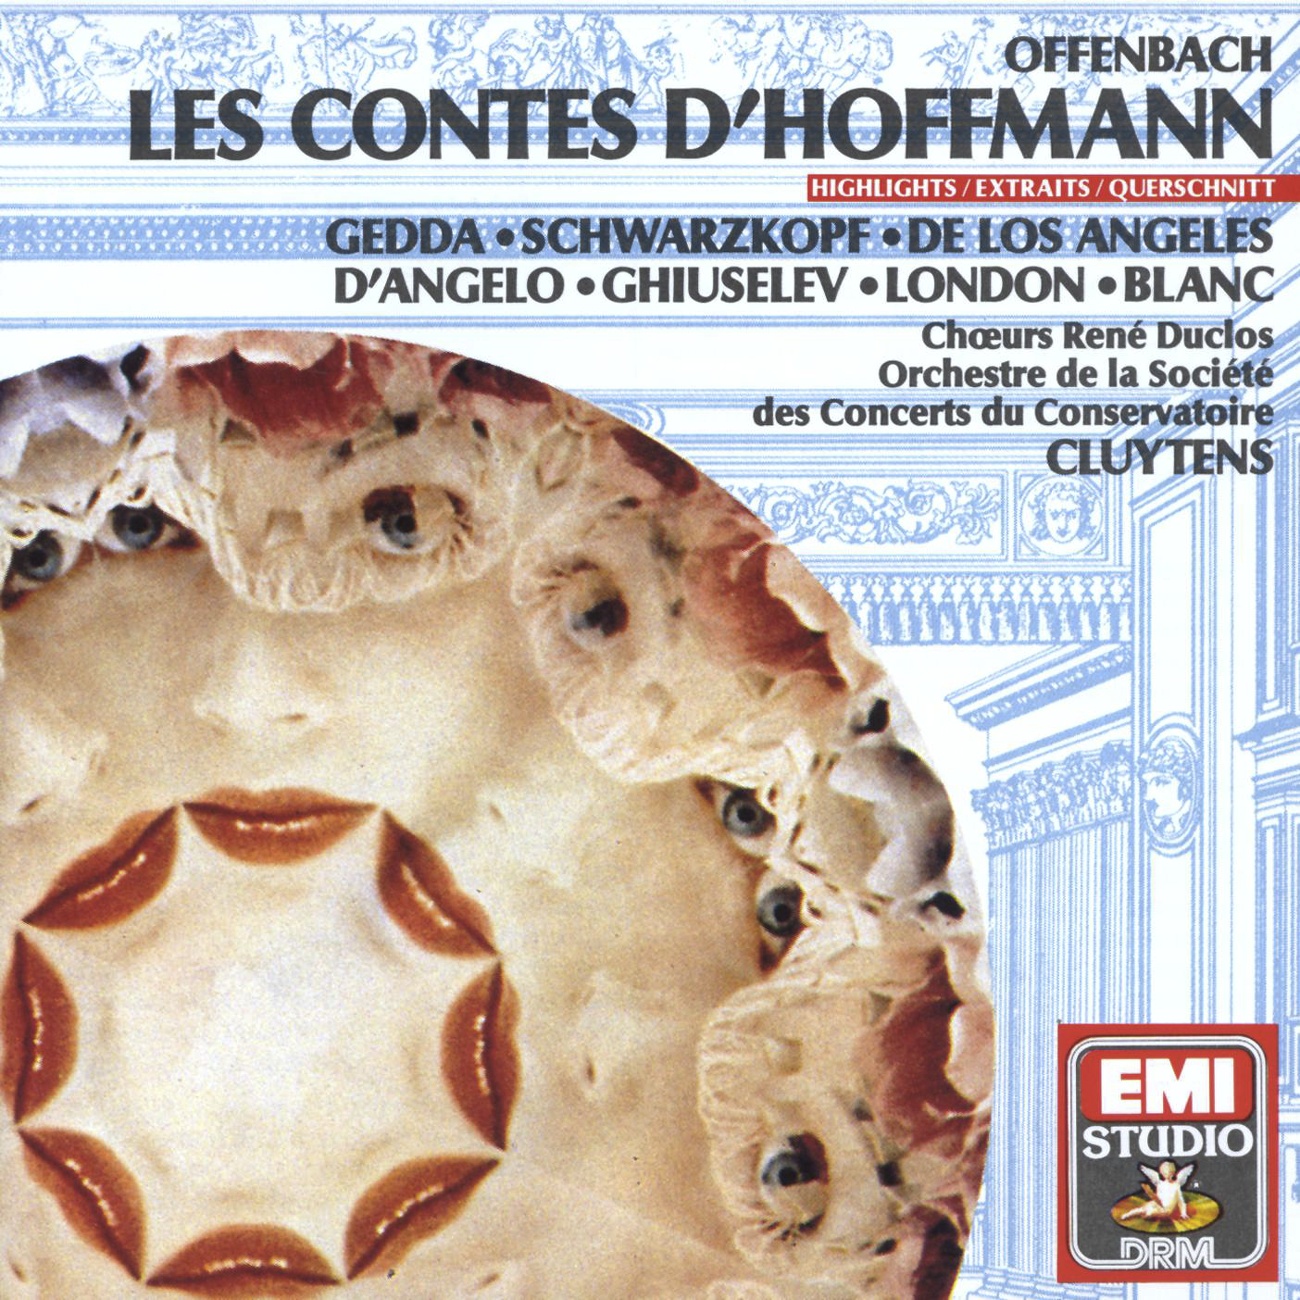 Les Contes d'Hoffmann (1989 Digital Remaster), DEUXIEME ACTE/ACT TWO/ZWEITER AKT: Allons! courage et confiance (Hoffmann)